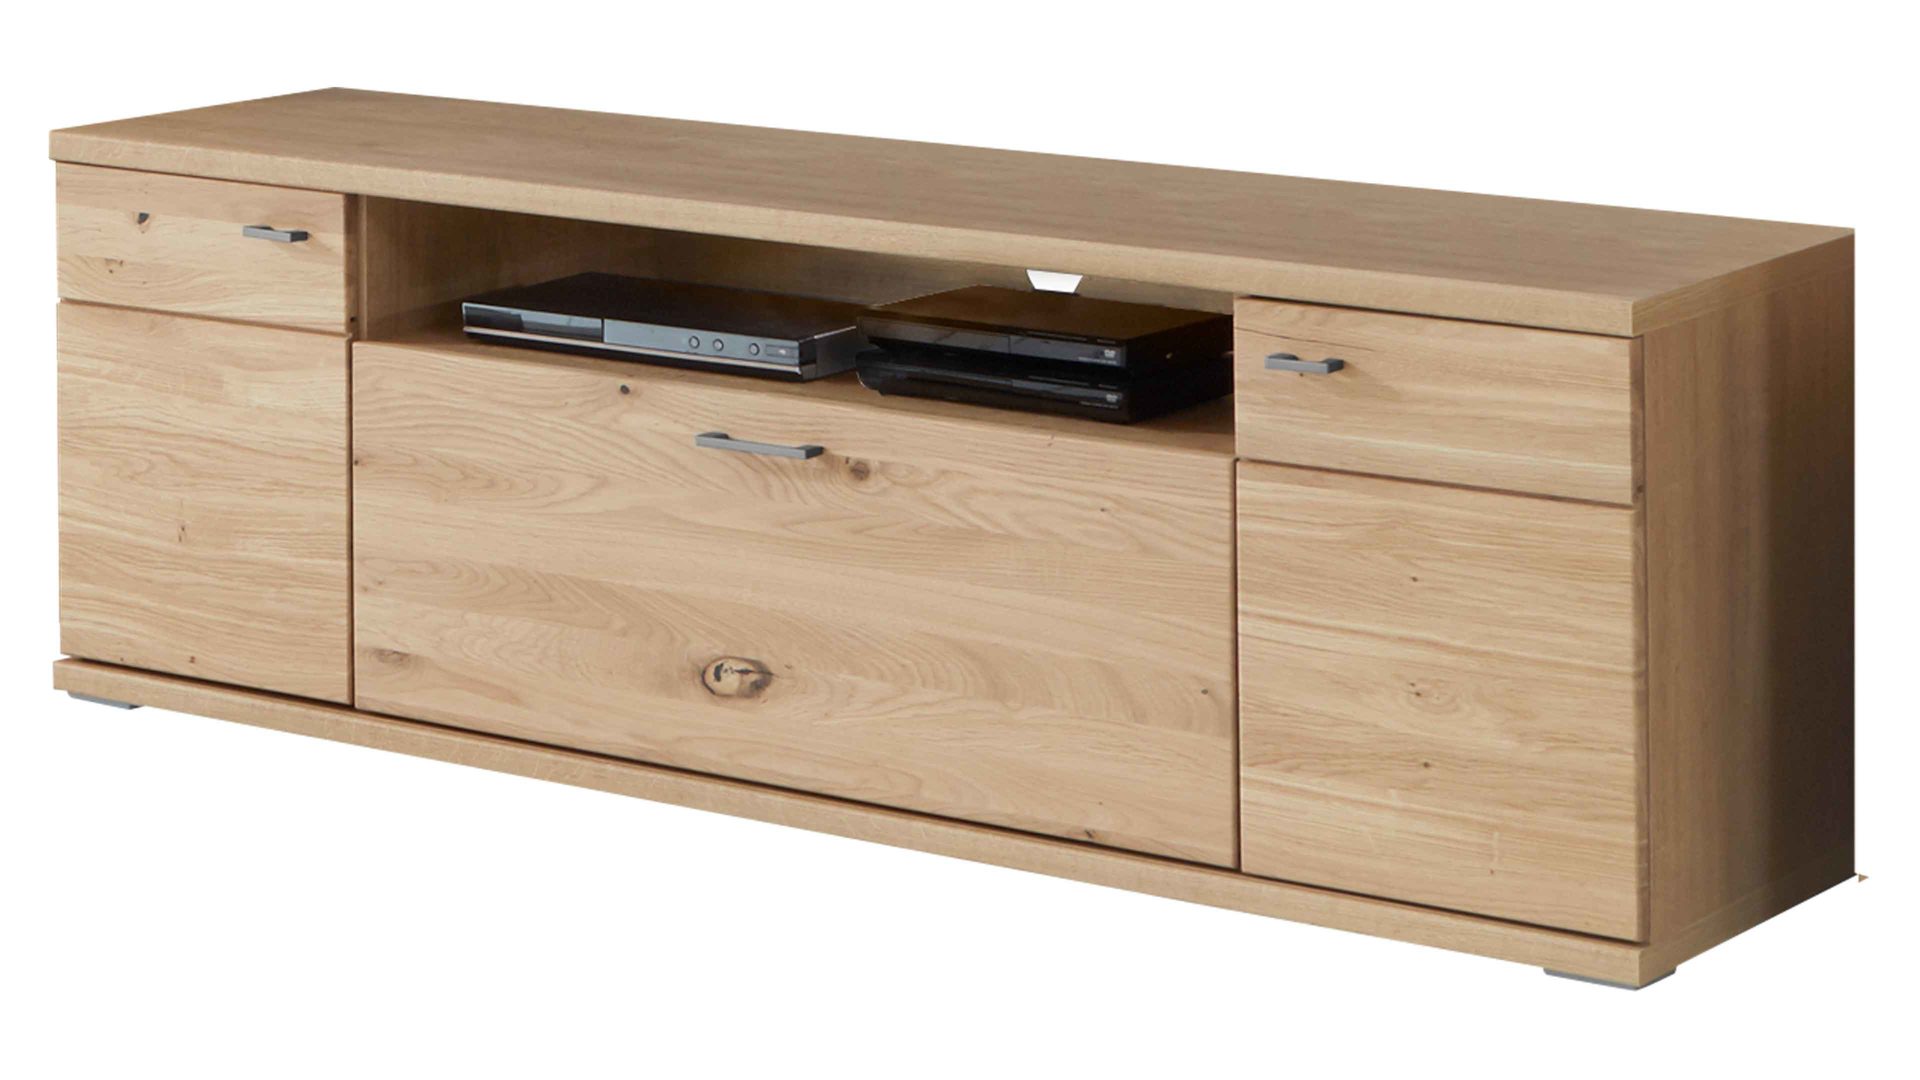 Lowboard Ideal möbel aus Holz in Holzfarben Wohnprogramm Brilon - Medien-Lowboard Alteiche – Breite ca. 160 cm